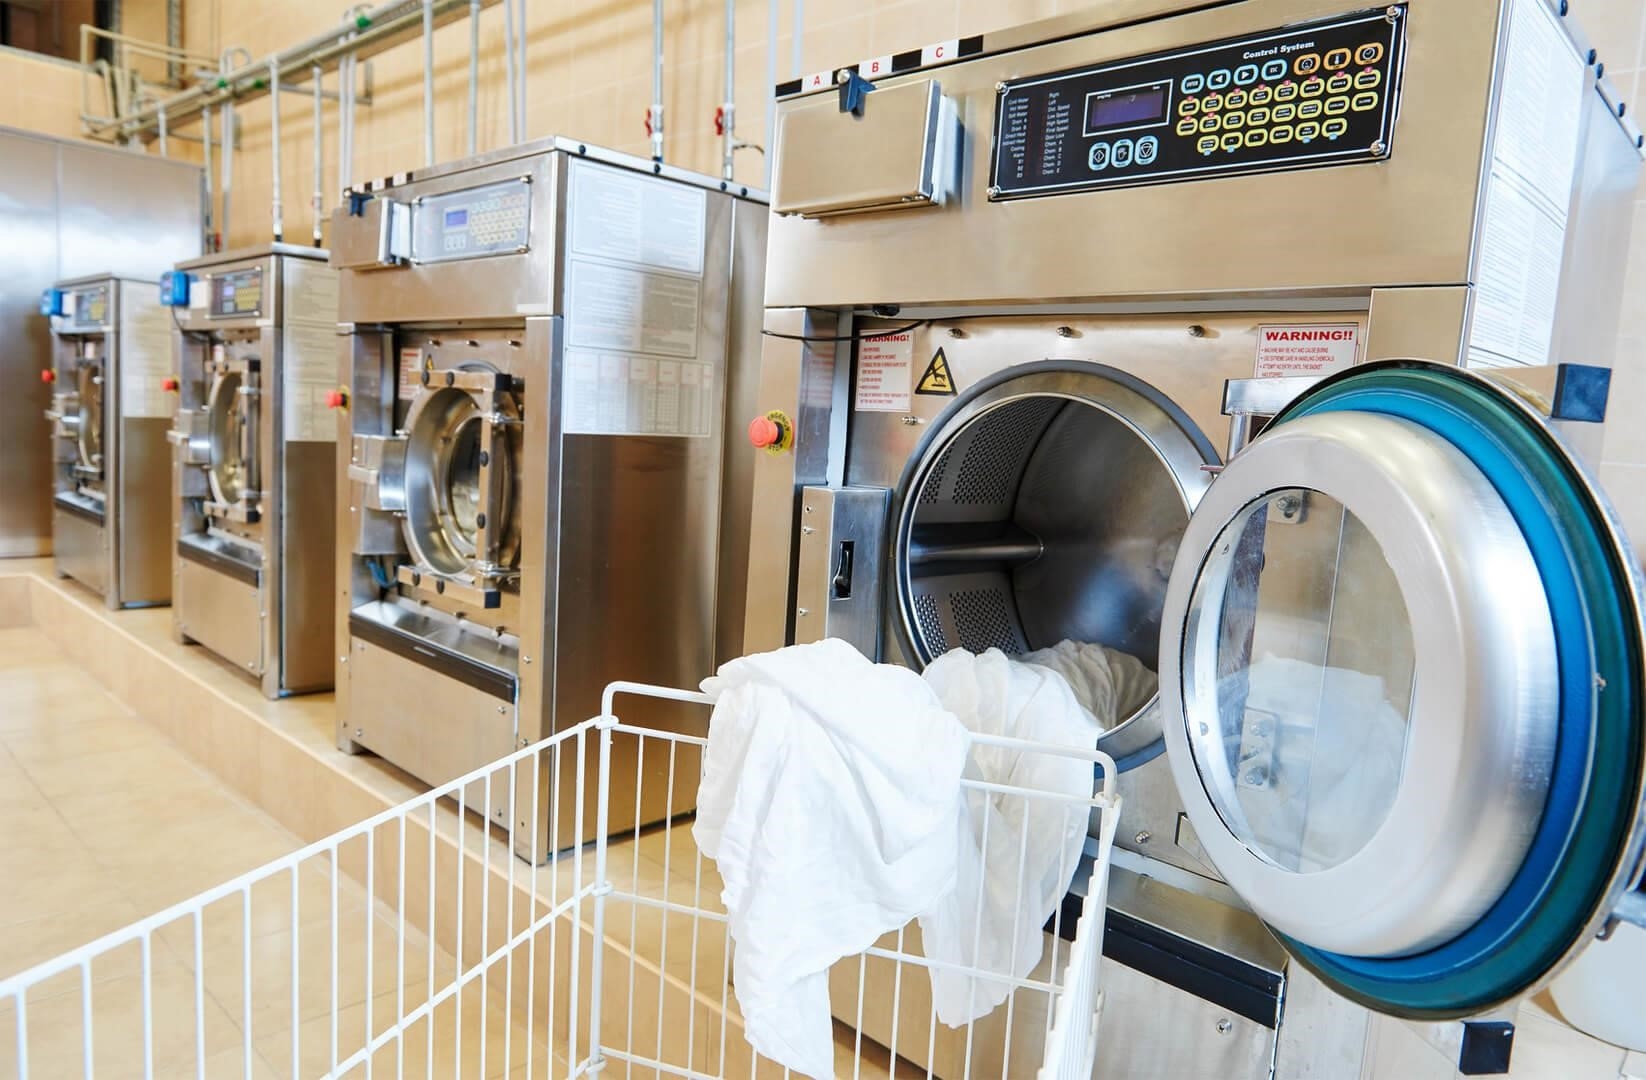 Dịch vụ giặt ủi quận 7: Giao nhận tận nơi hoàn hảo